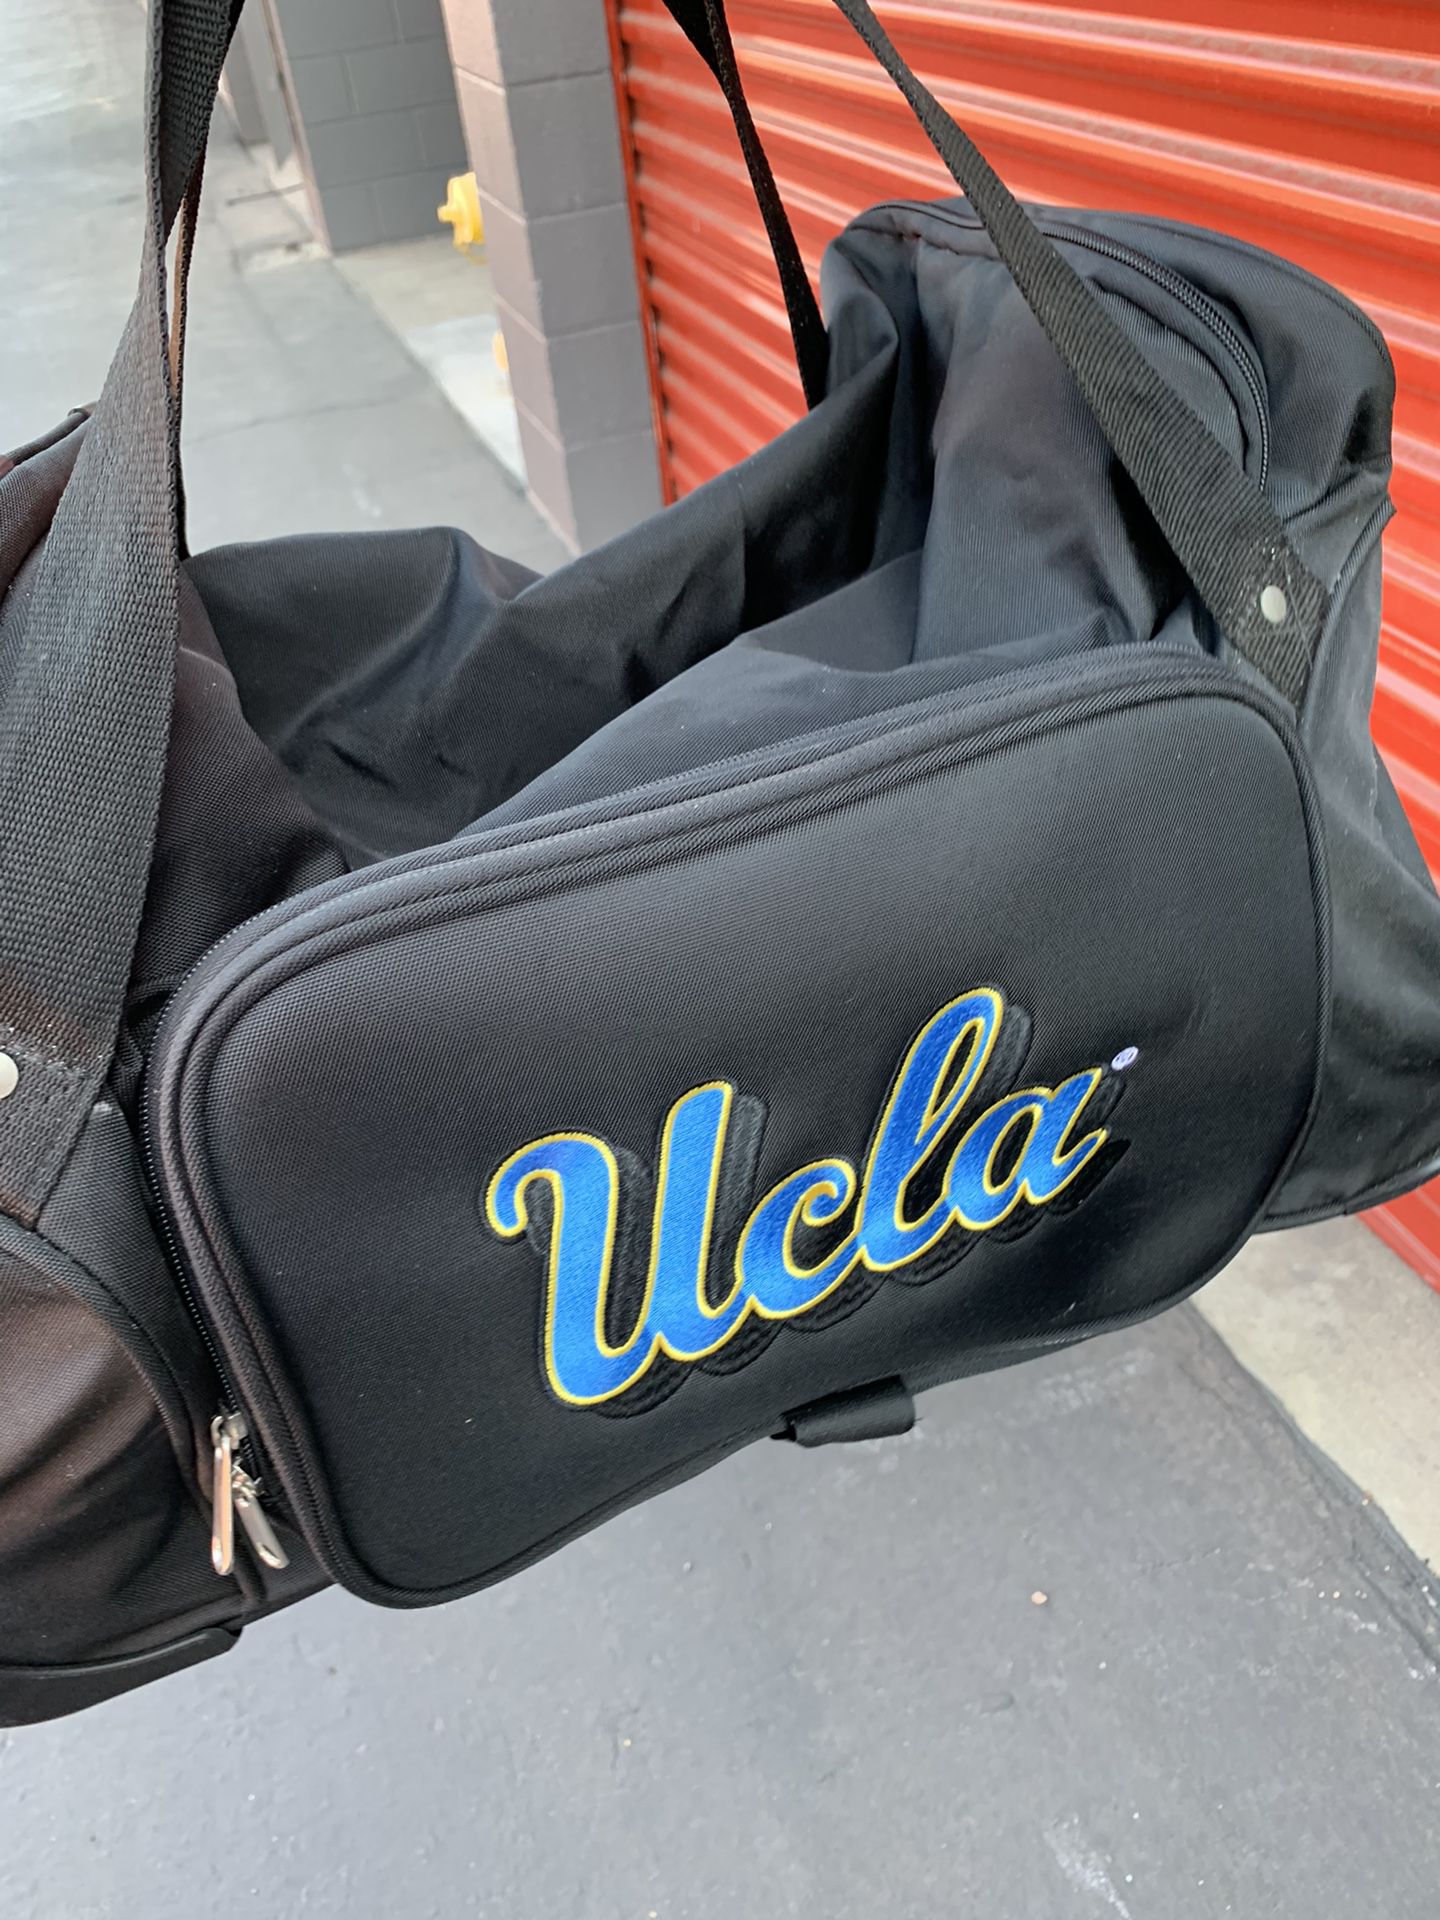 UCLA duffle bag